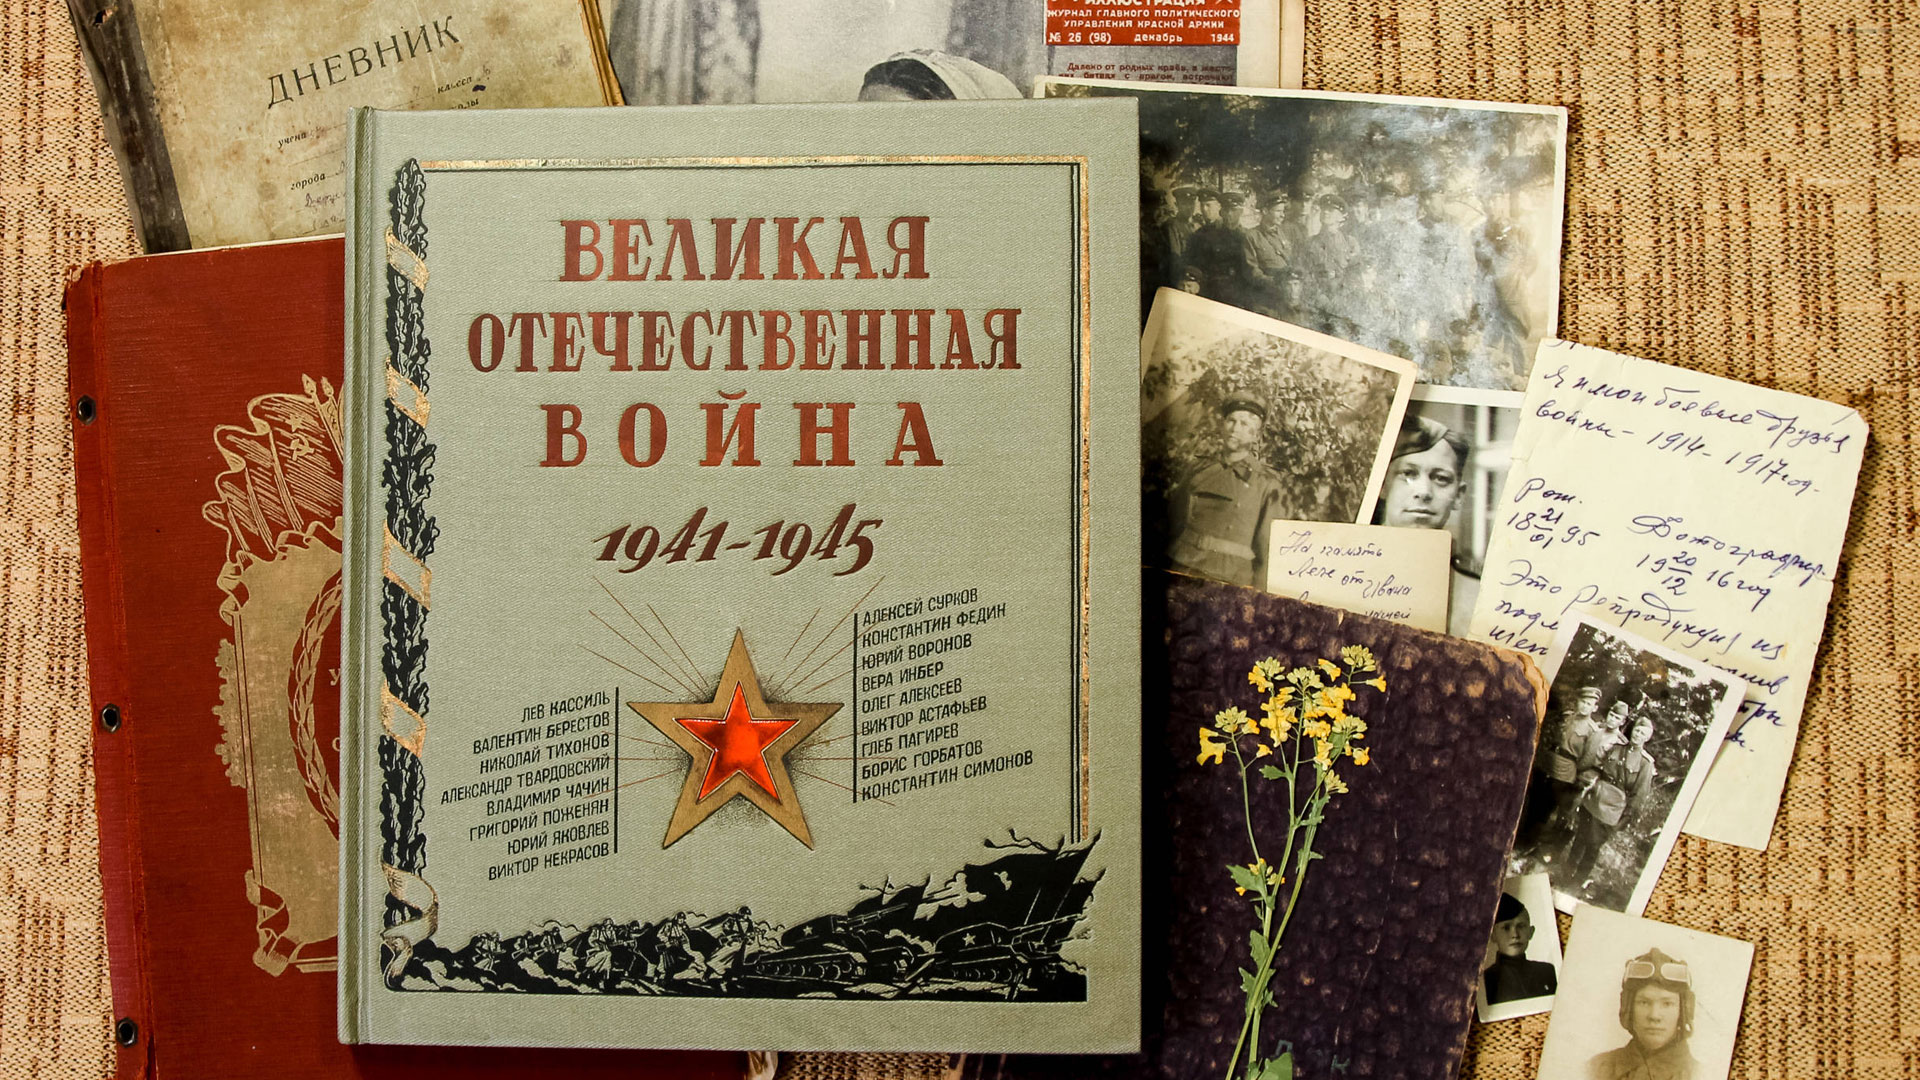 СОРОКОВЫЕ, РОКОВЫЕ... Видеообзор книг и экранизаций о Великой Отечественной войне 1941 - 1945 годов